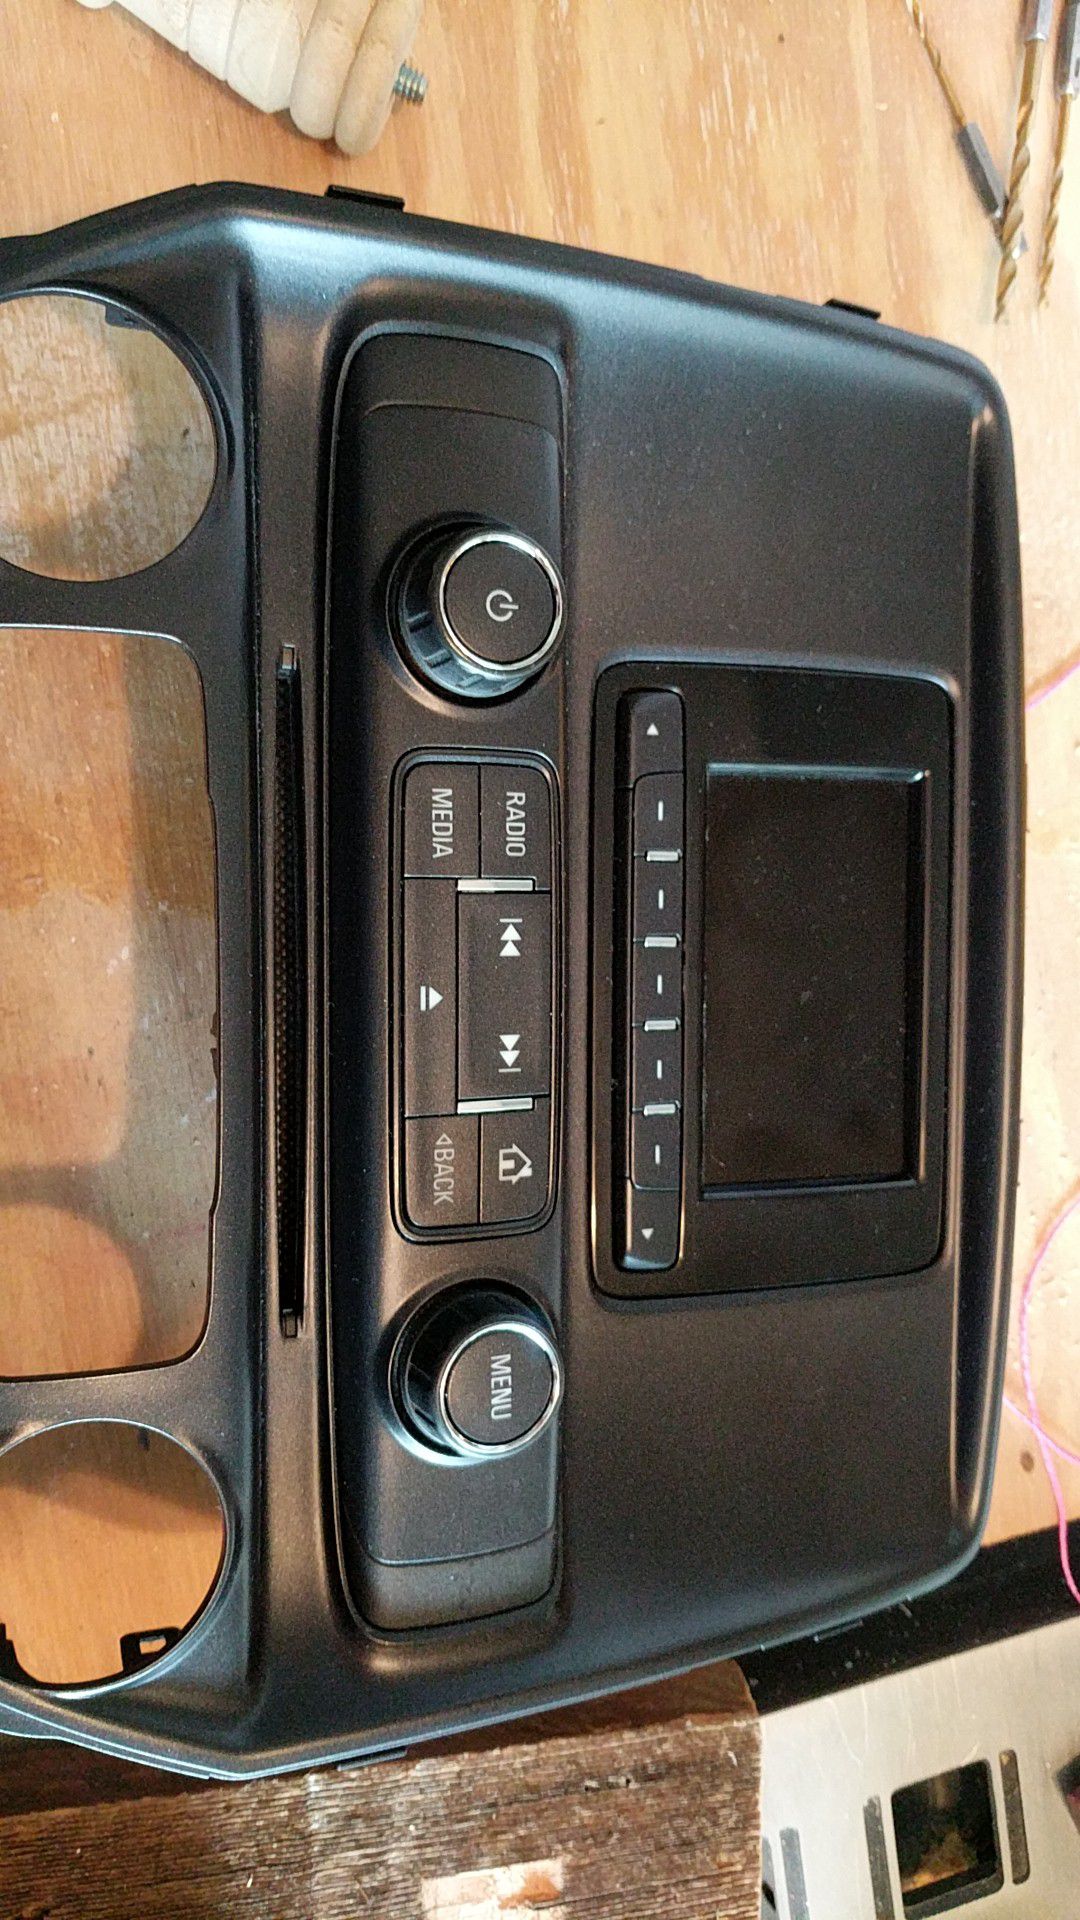 2014 Chevrolet Silverado Radio